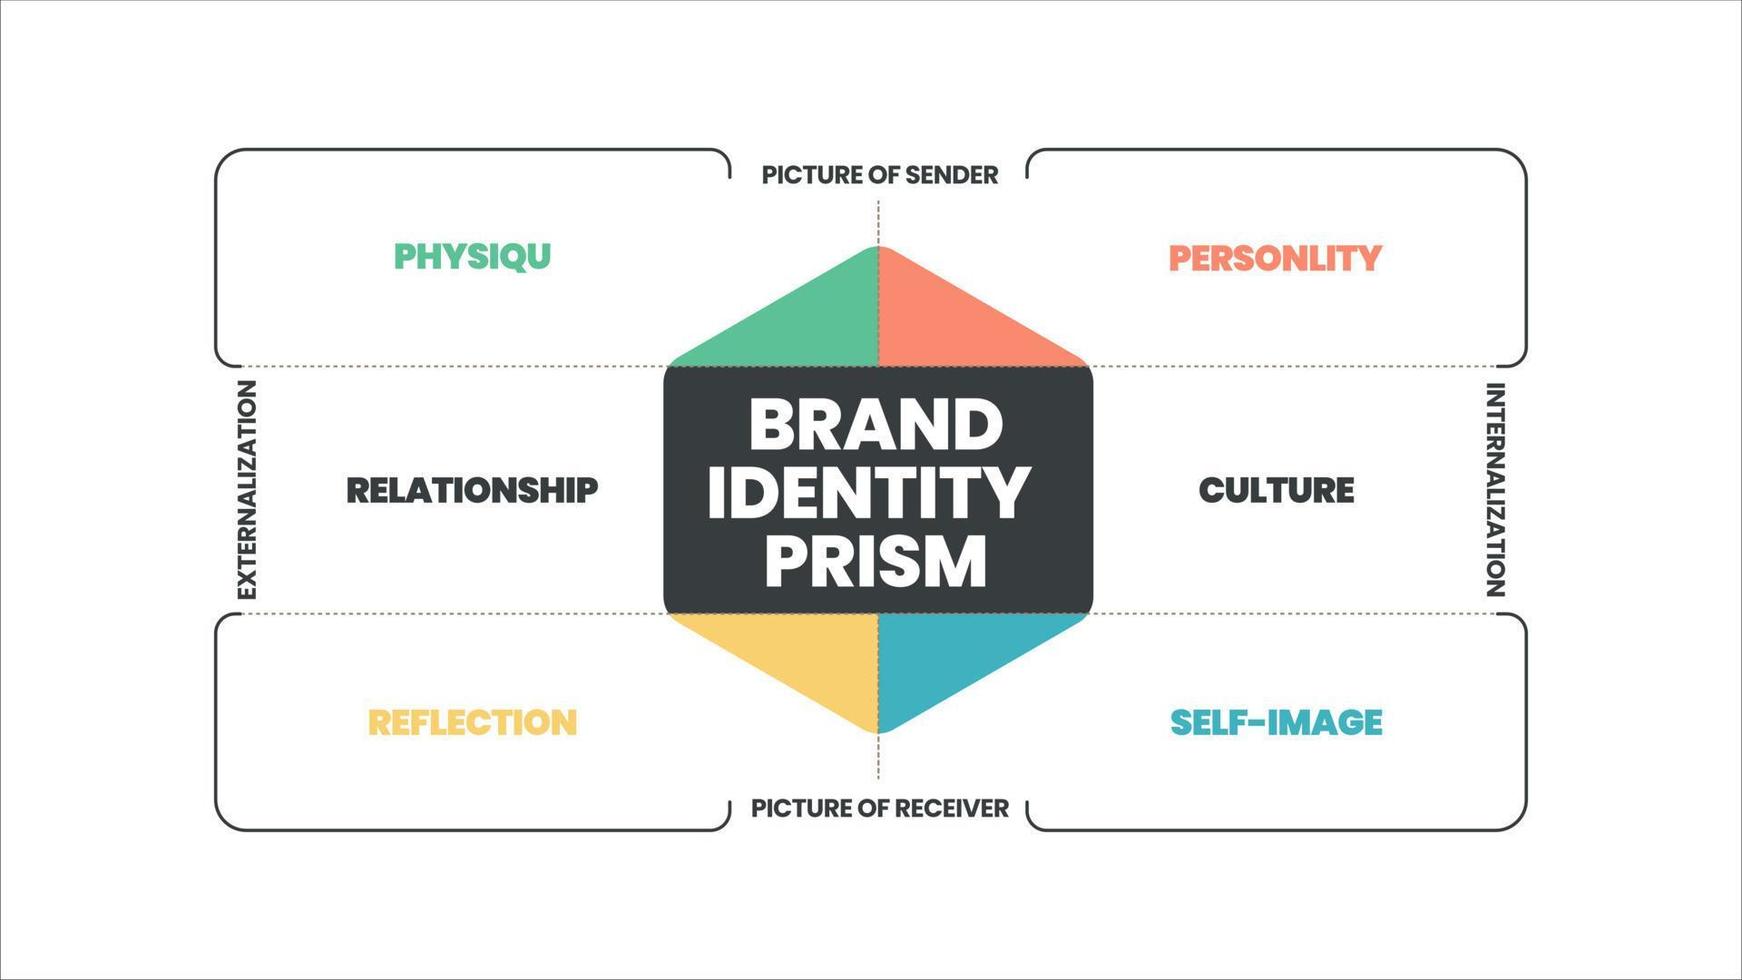 O vetor infográfico do prisma da identidade da marca é um conceito de marketing em 8 elementos para distinguir a marca na mente dos consumidores, como físico, personalidade, cultura, relacionamento, reflexão, auto-imagem